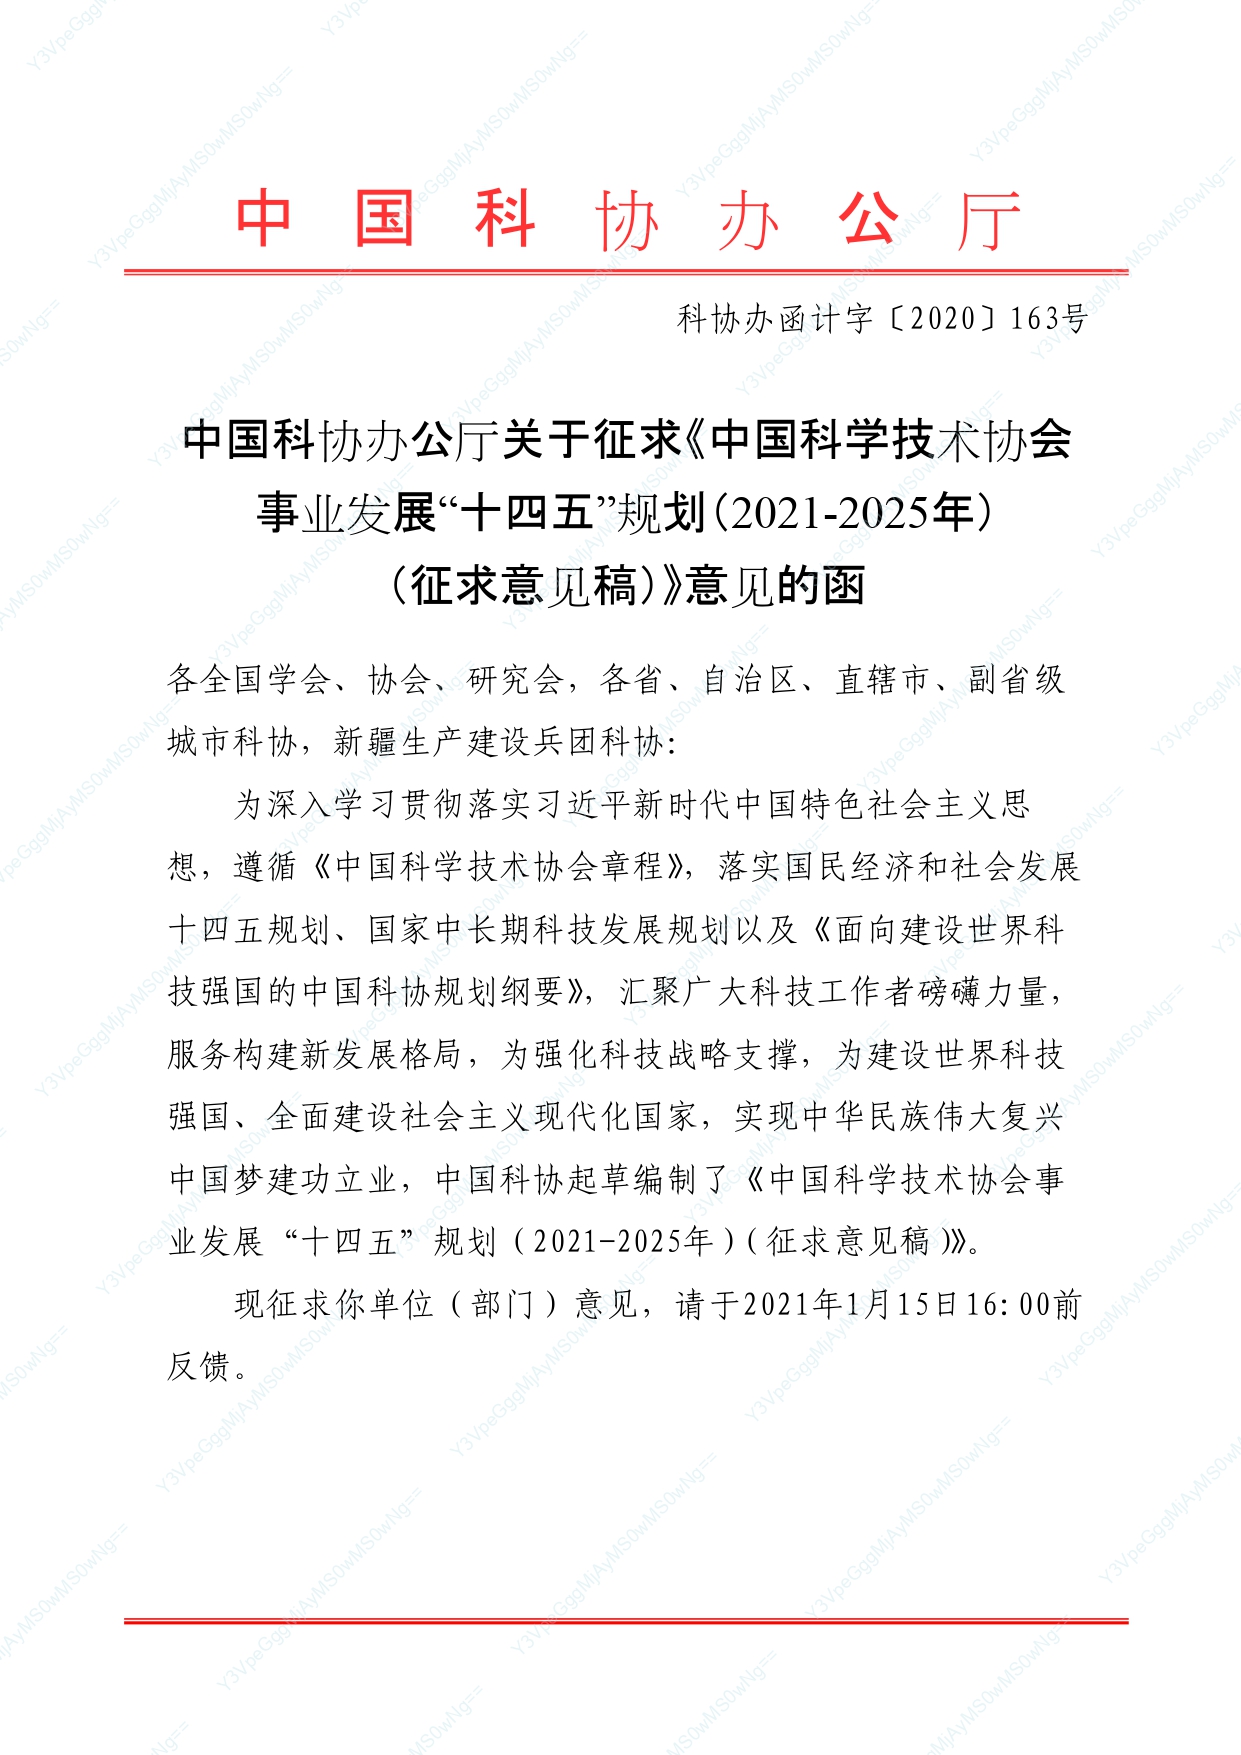 关于征求《中国科学技术协会事业发展“十四五”规划（2021-2025年）（征求意见稿）》意见的函_page-0001.jpg